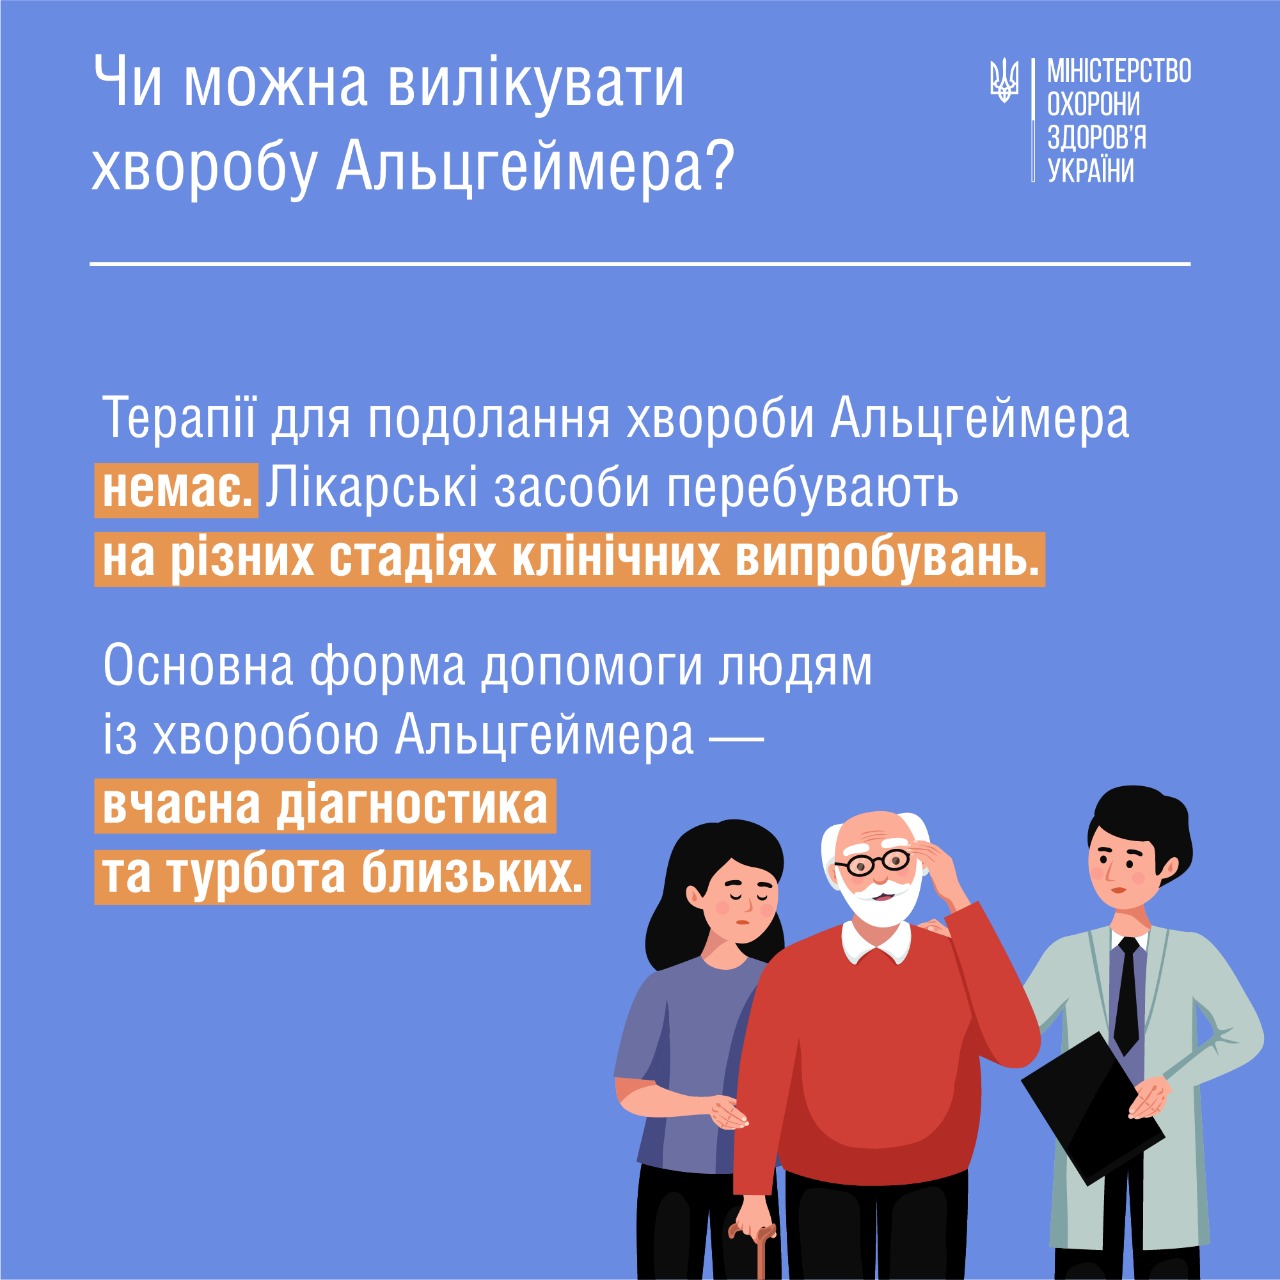 Министерство здравоохранения Украины сообщает о том, что более 50 миллионов человек в мире имеют деменцию